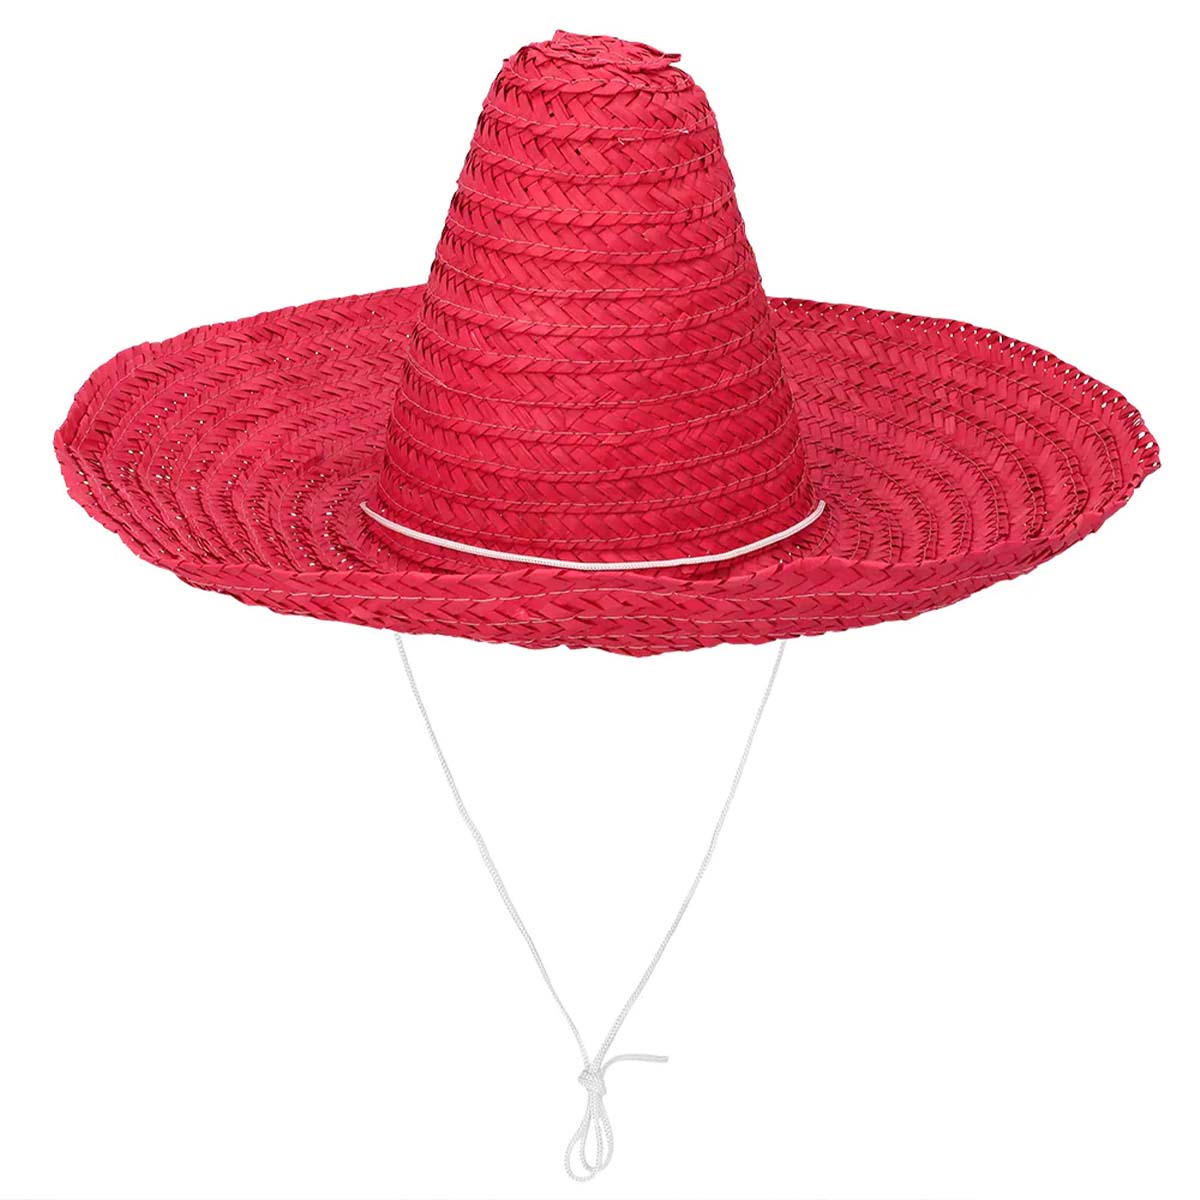 Sombrero Puebla röd 49 cm